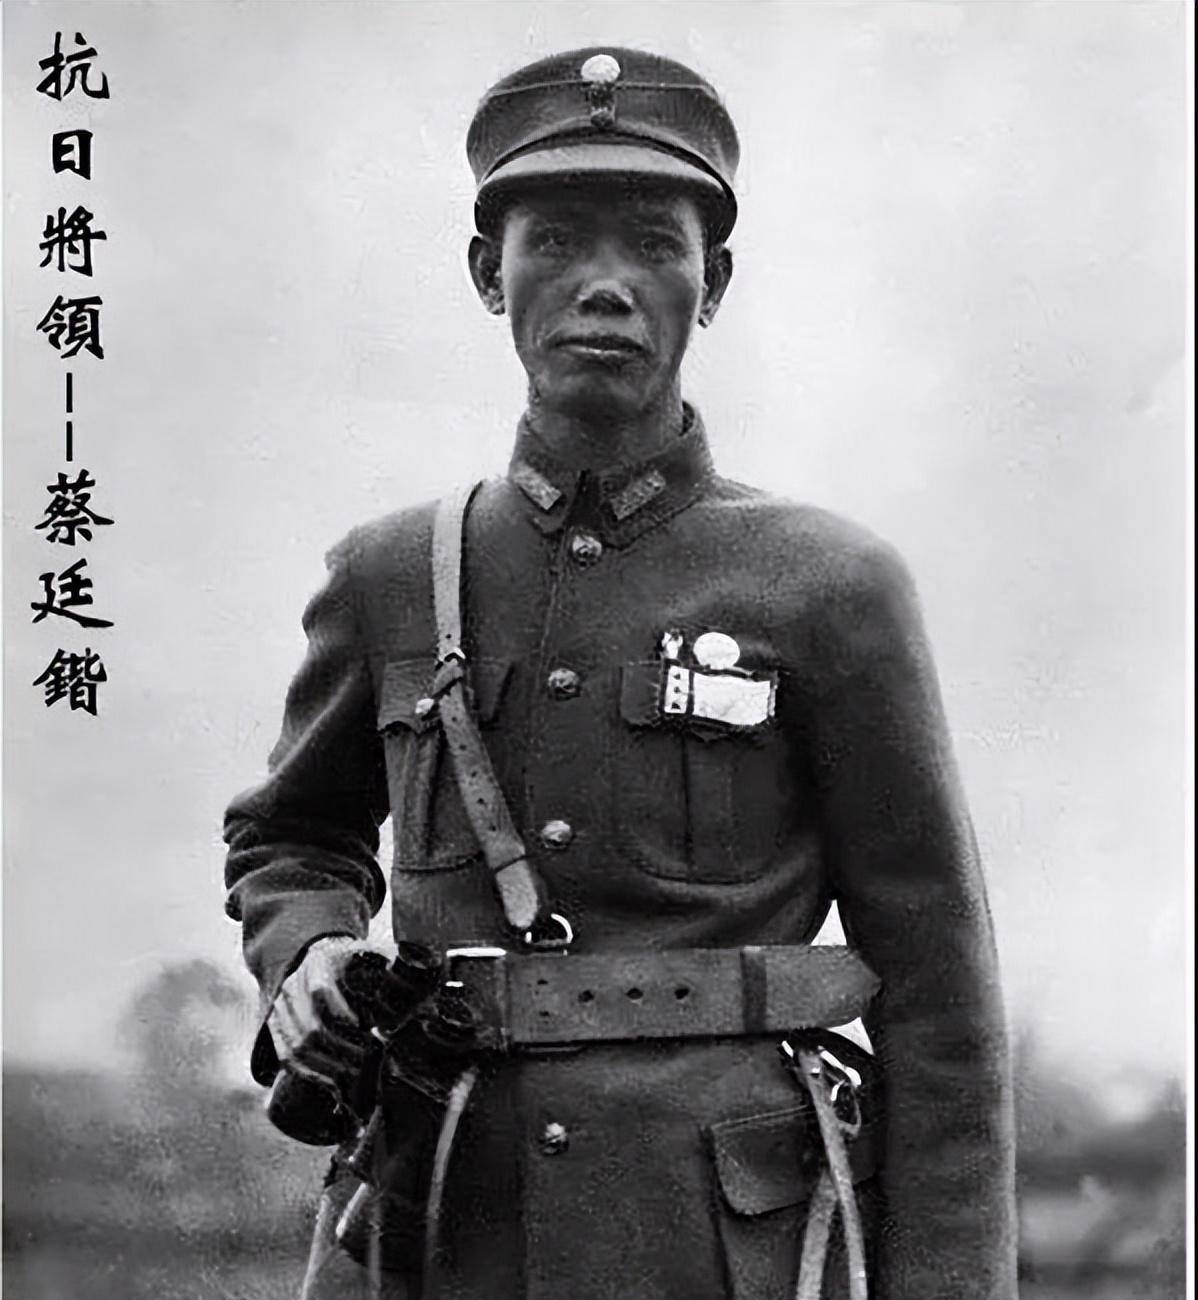 原创1927年南昌起义叶挺好友突然率部逃跑后因为一个贡献被夸爱国